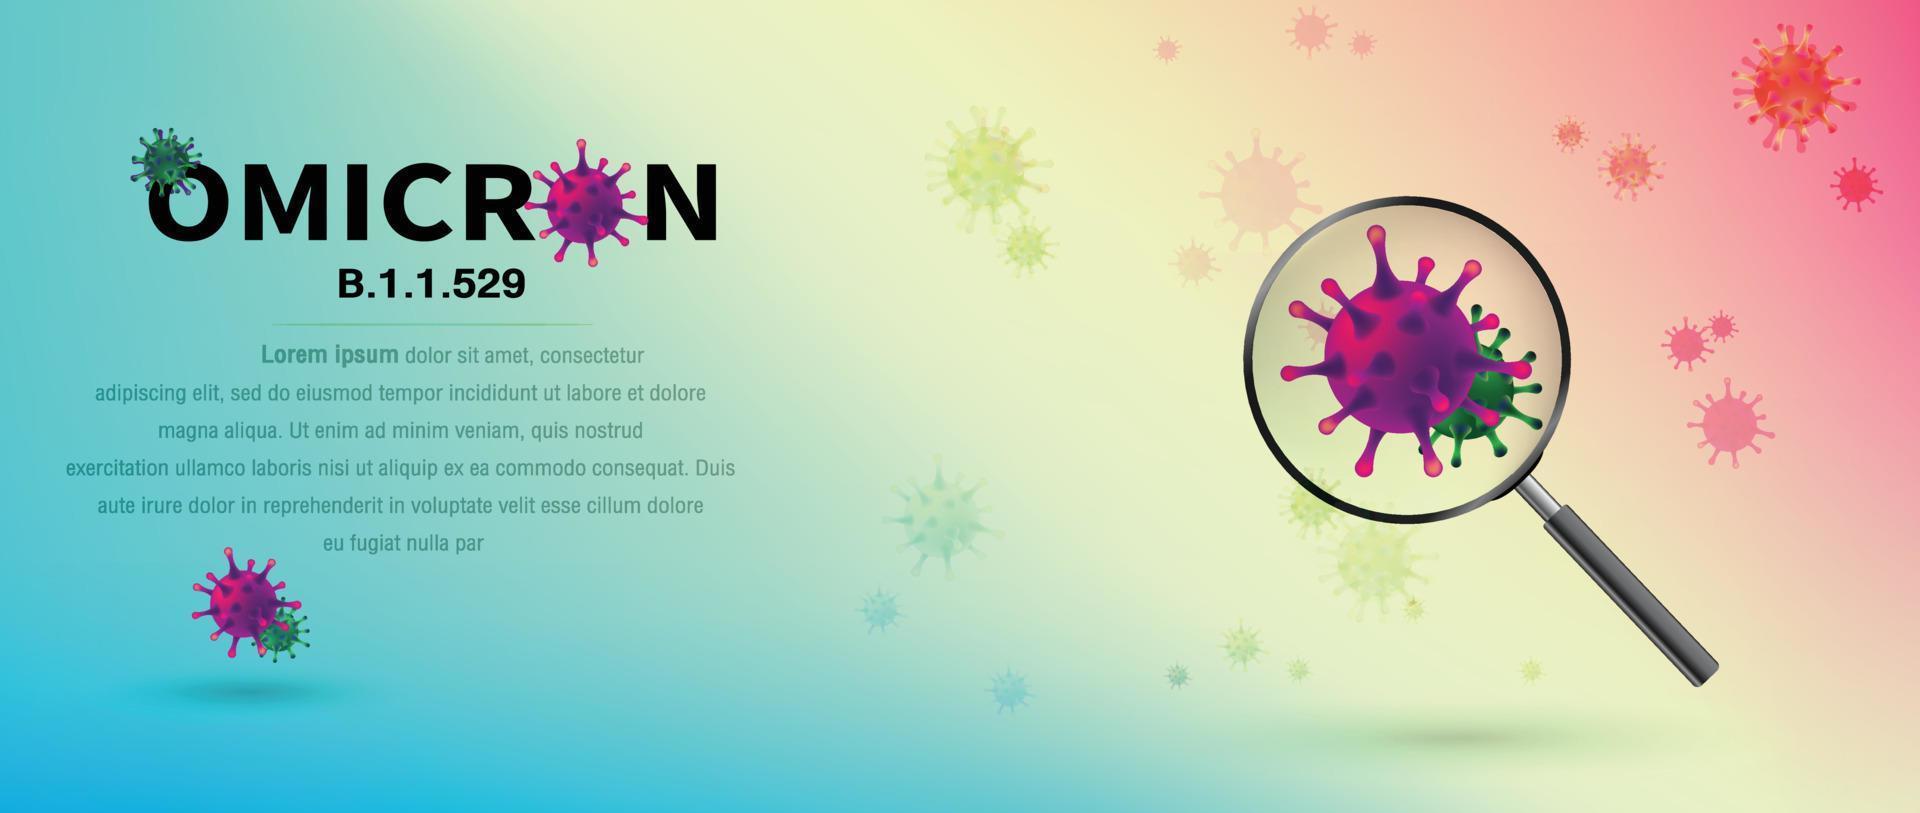 virus omicron, nueva variante covid-19. encuesta médica con una lupa. infección médica. ilustración vectorial vector